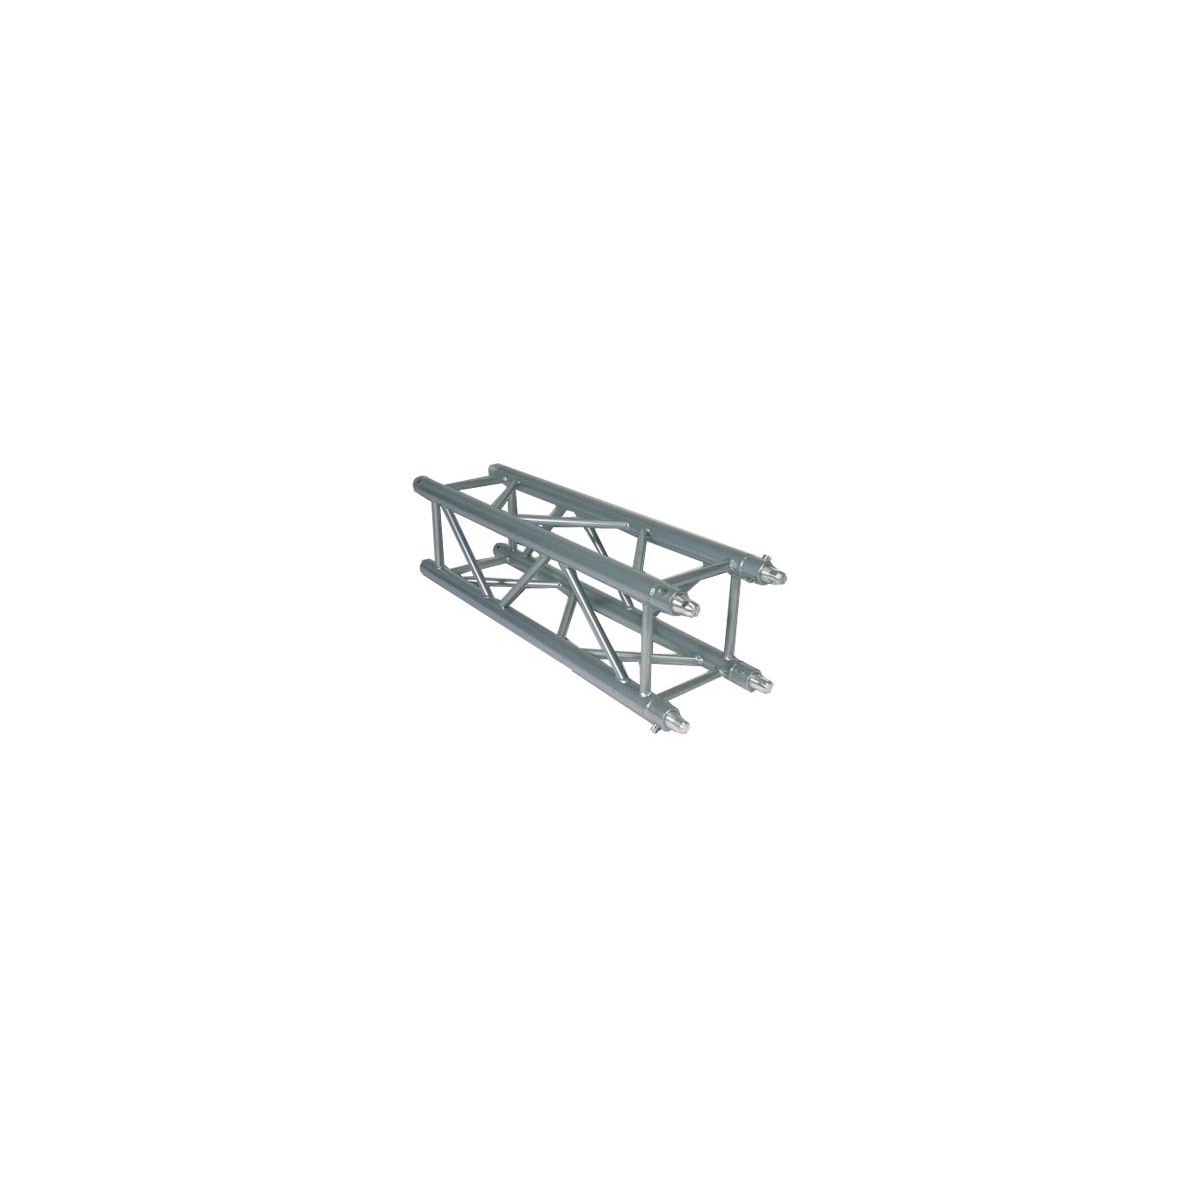 Structures aluminium - Mobiltruss - QUATRO 40025